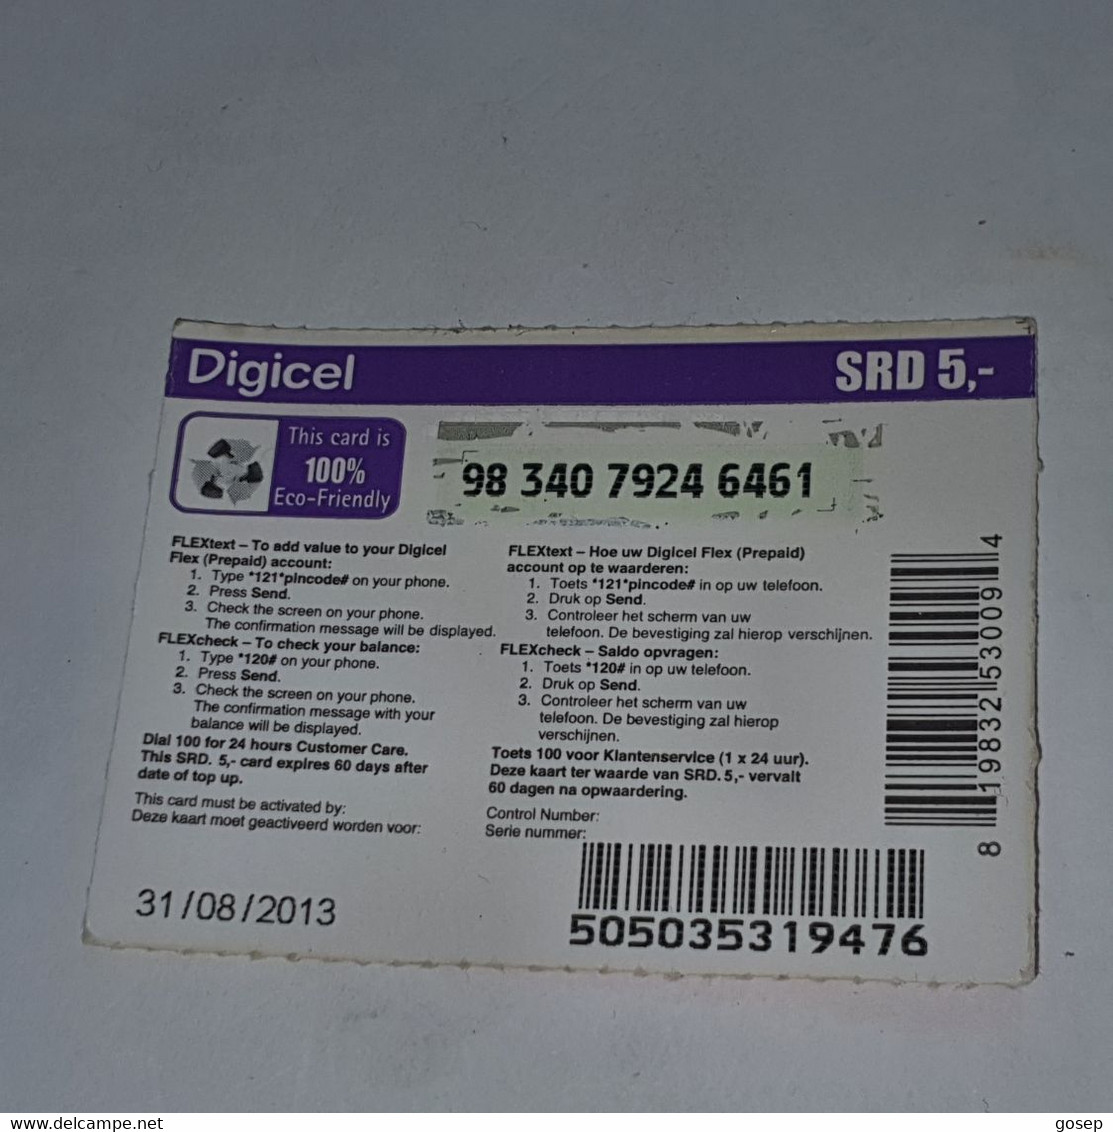 Surinam-(SR-DIG-REF-0021)--aardeer Ons Milieugreen-(1)($5)-(98-340-7924-6461)-used Card +1card Prepiad Free - Suriname